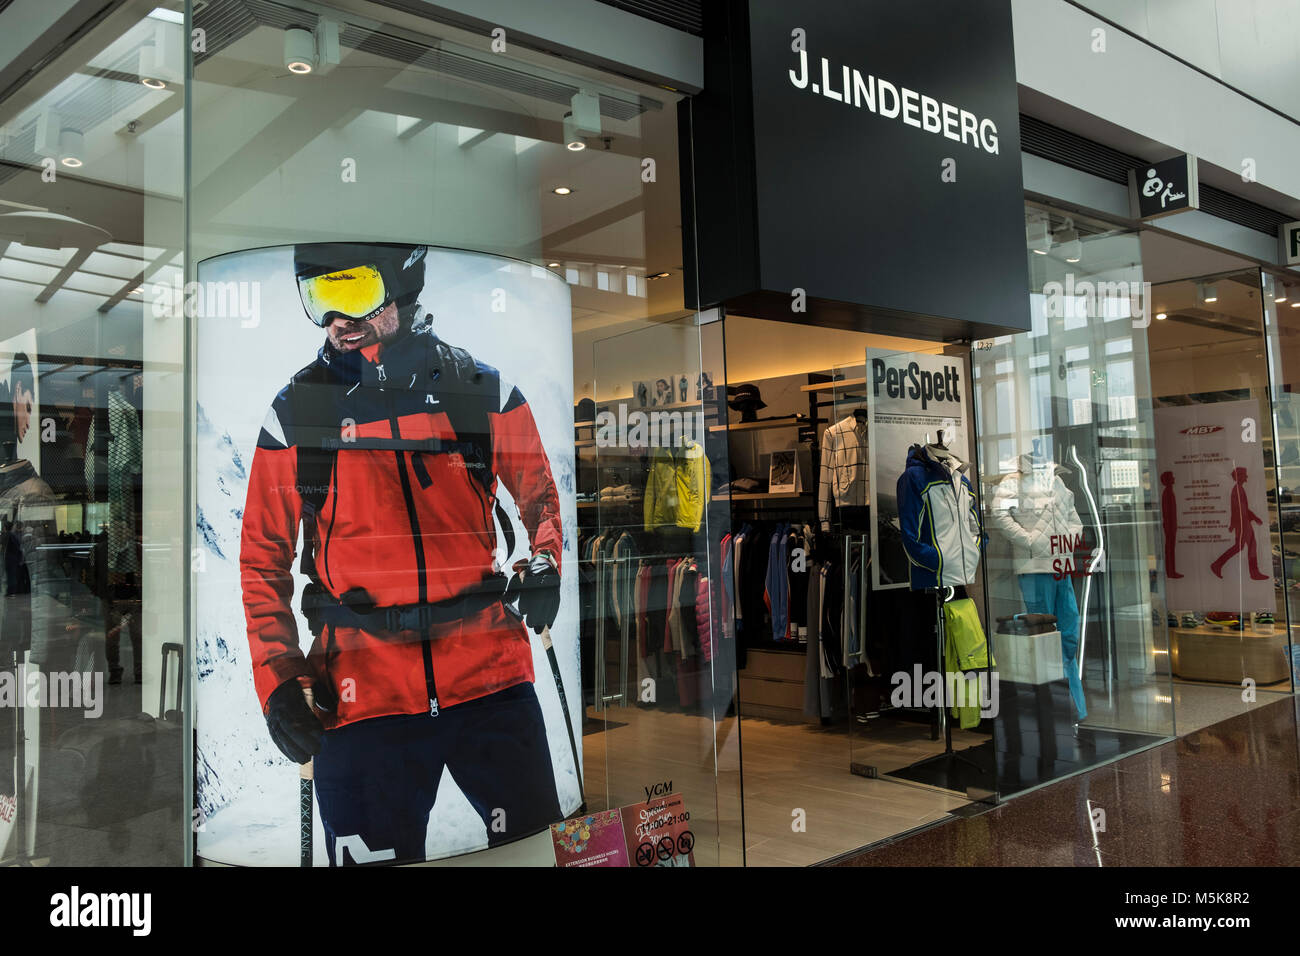 Hong Kong, February 15, 2018: J. Lindeberg store in Hong Kong. J.Lindeberg is a Swedish clothing company. Stock Photo